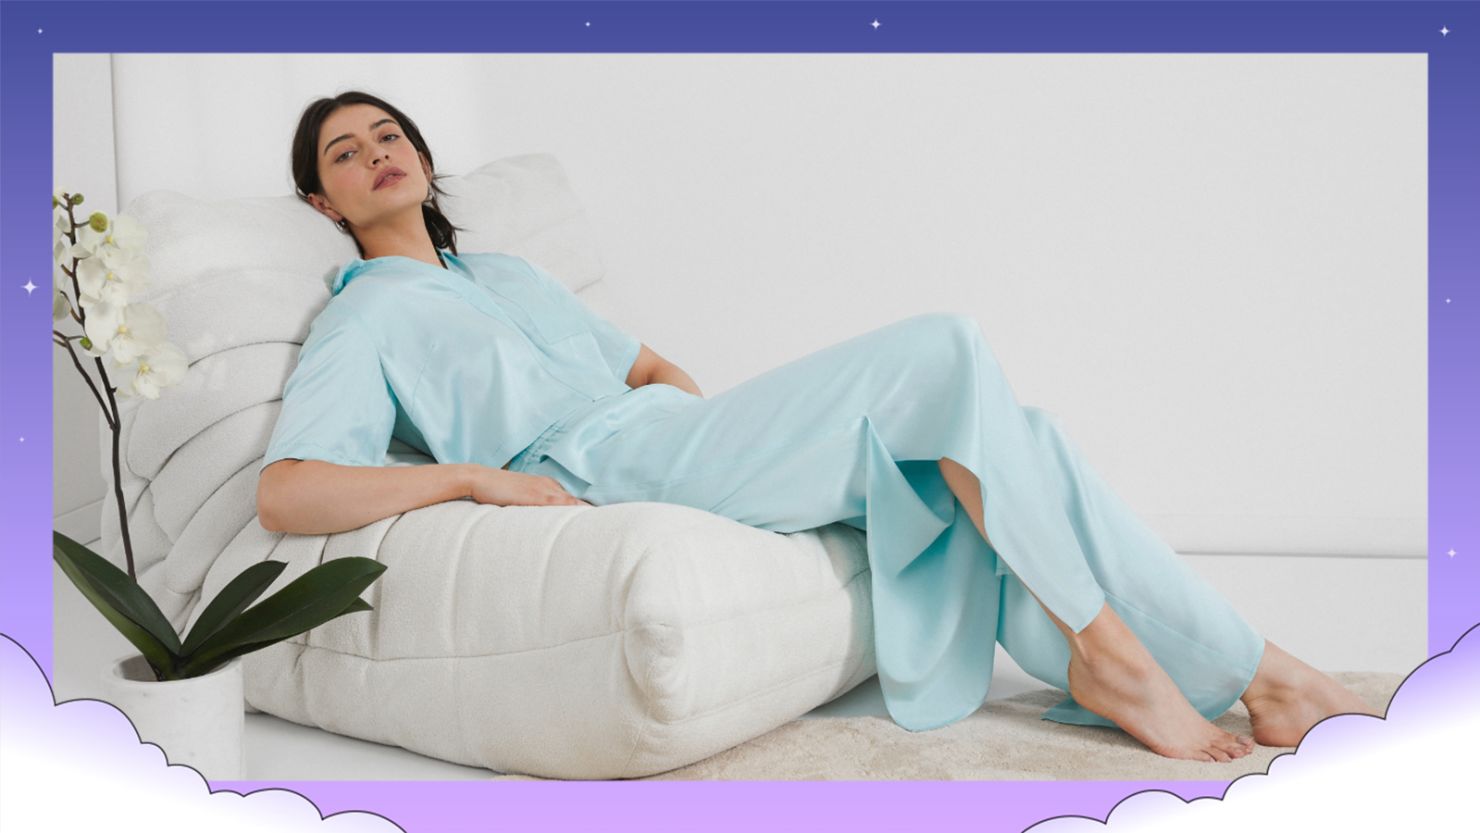 Comfy Pajama – Sleep You Need